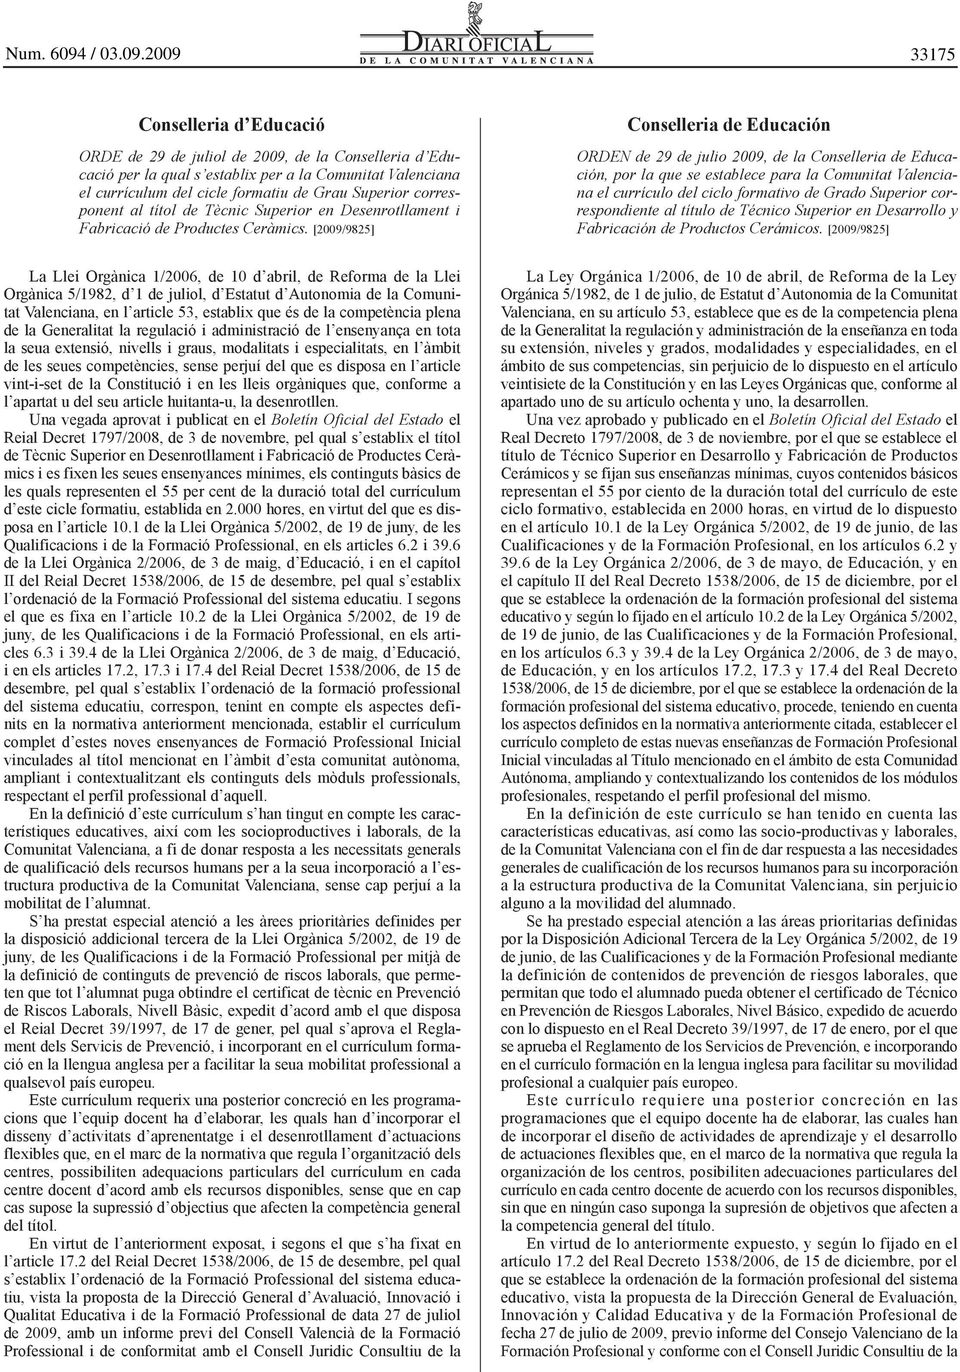 [2009/9825] Conselleria de Educación ORDEN de 29 de julio 2009, de la Conselleria de Educación, por la que se establece para la Comunitat Valenciana el currículo del ciclo formativo de Grado Superior